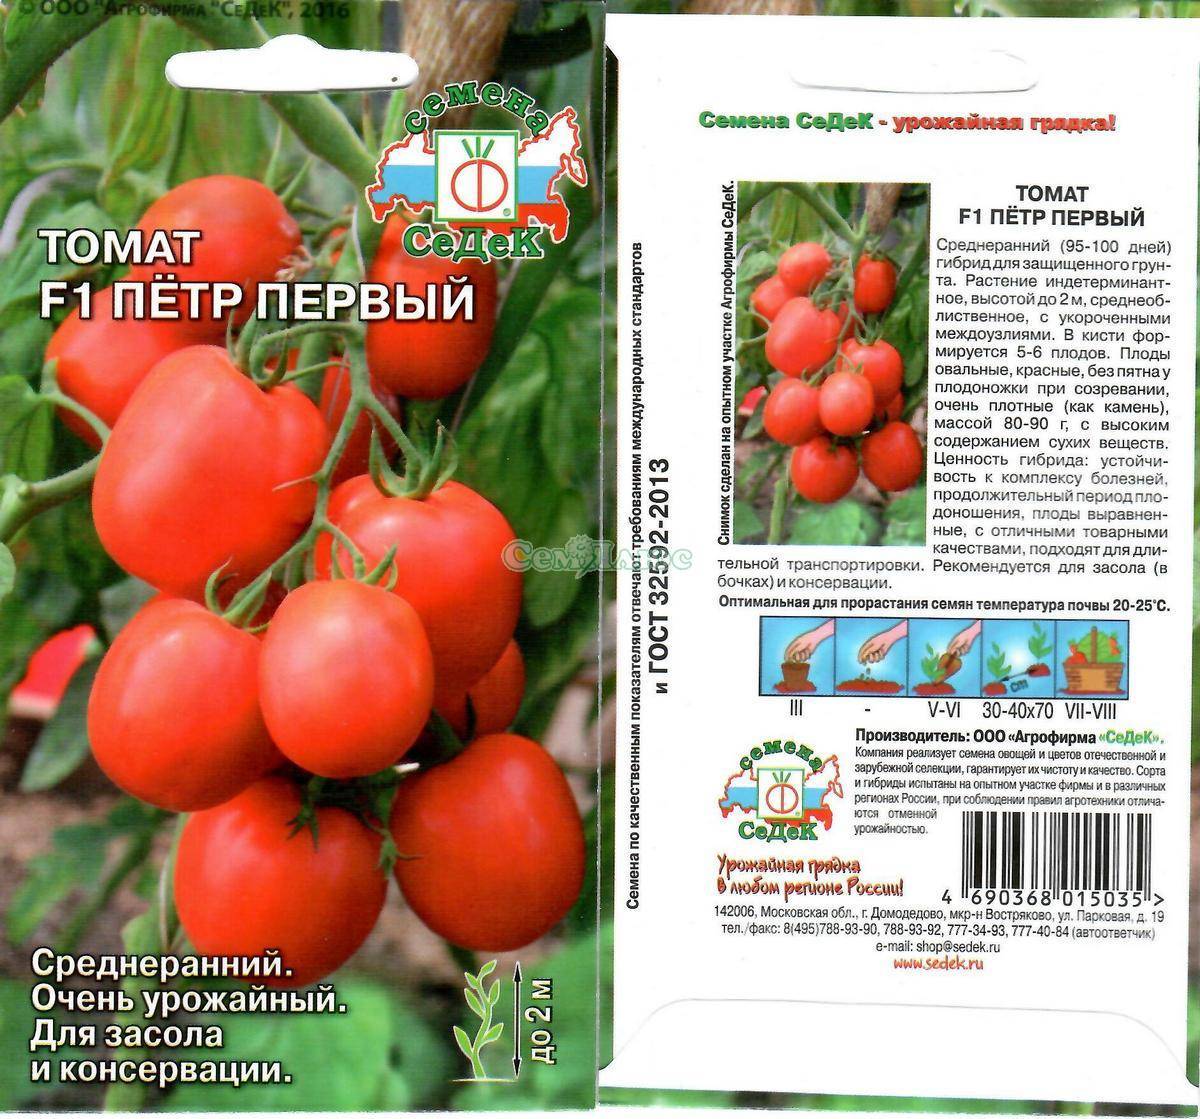 Описание сорта томата Петр Первый f1, особенности выращивания и урожайность